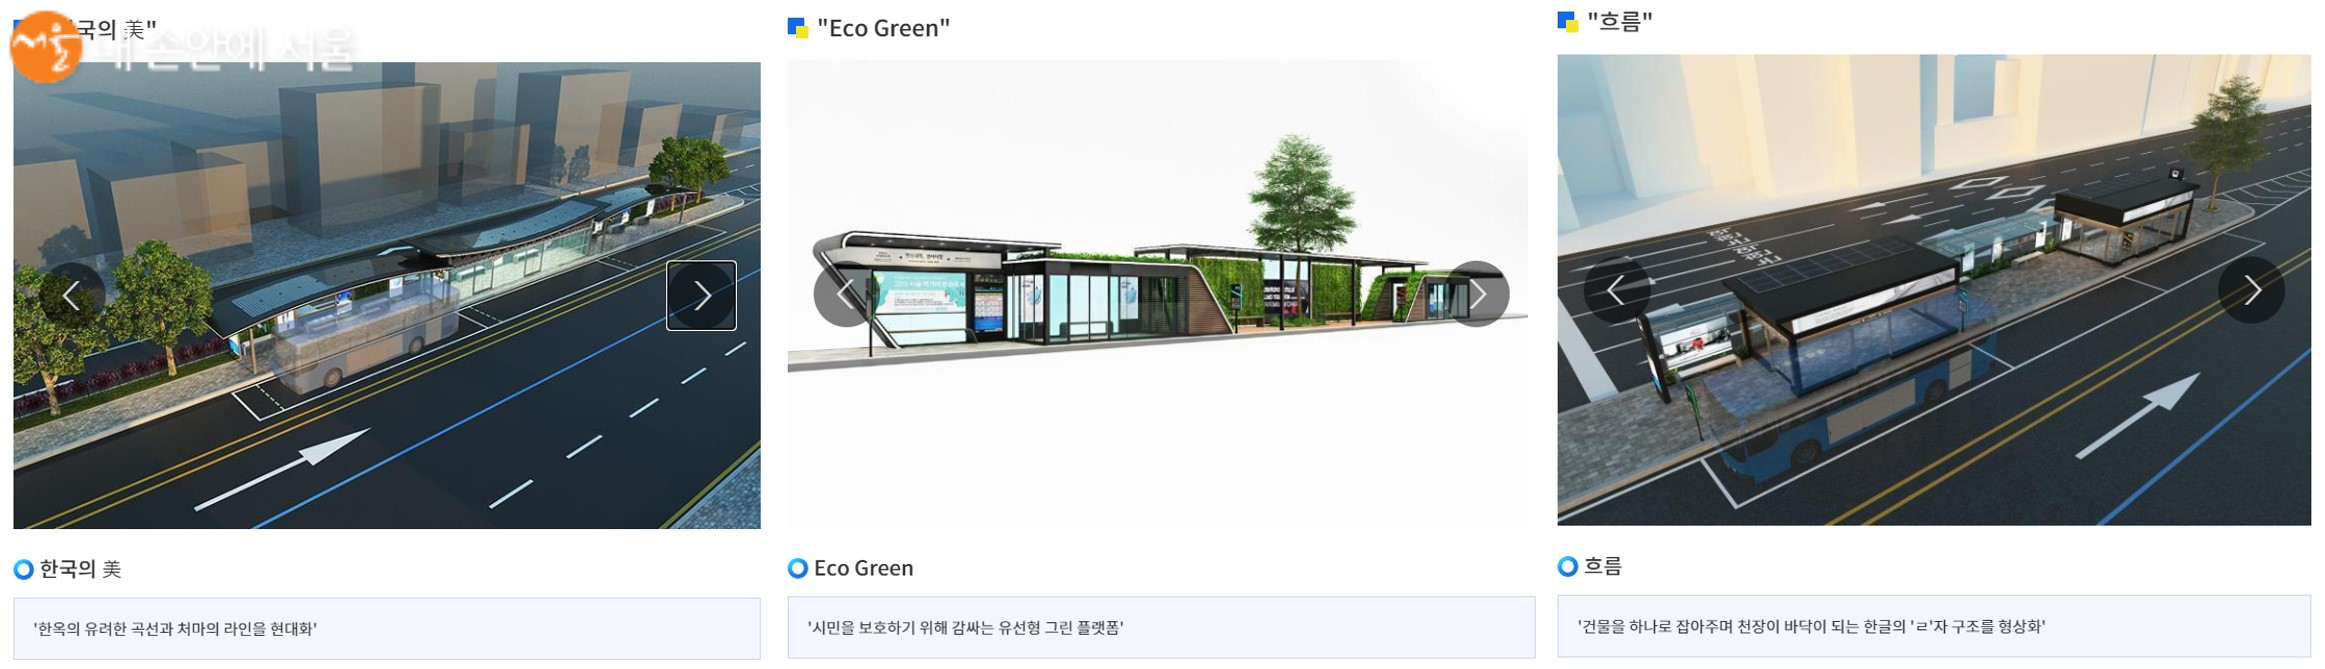 스마트한 버스 정류소 '스마트 쉘터'의 디자인을 뽑는 투표가 진행 중이다. 